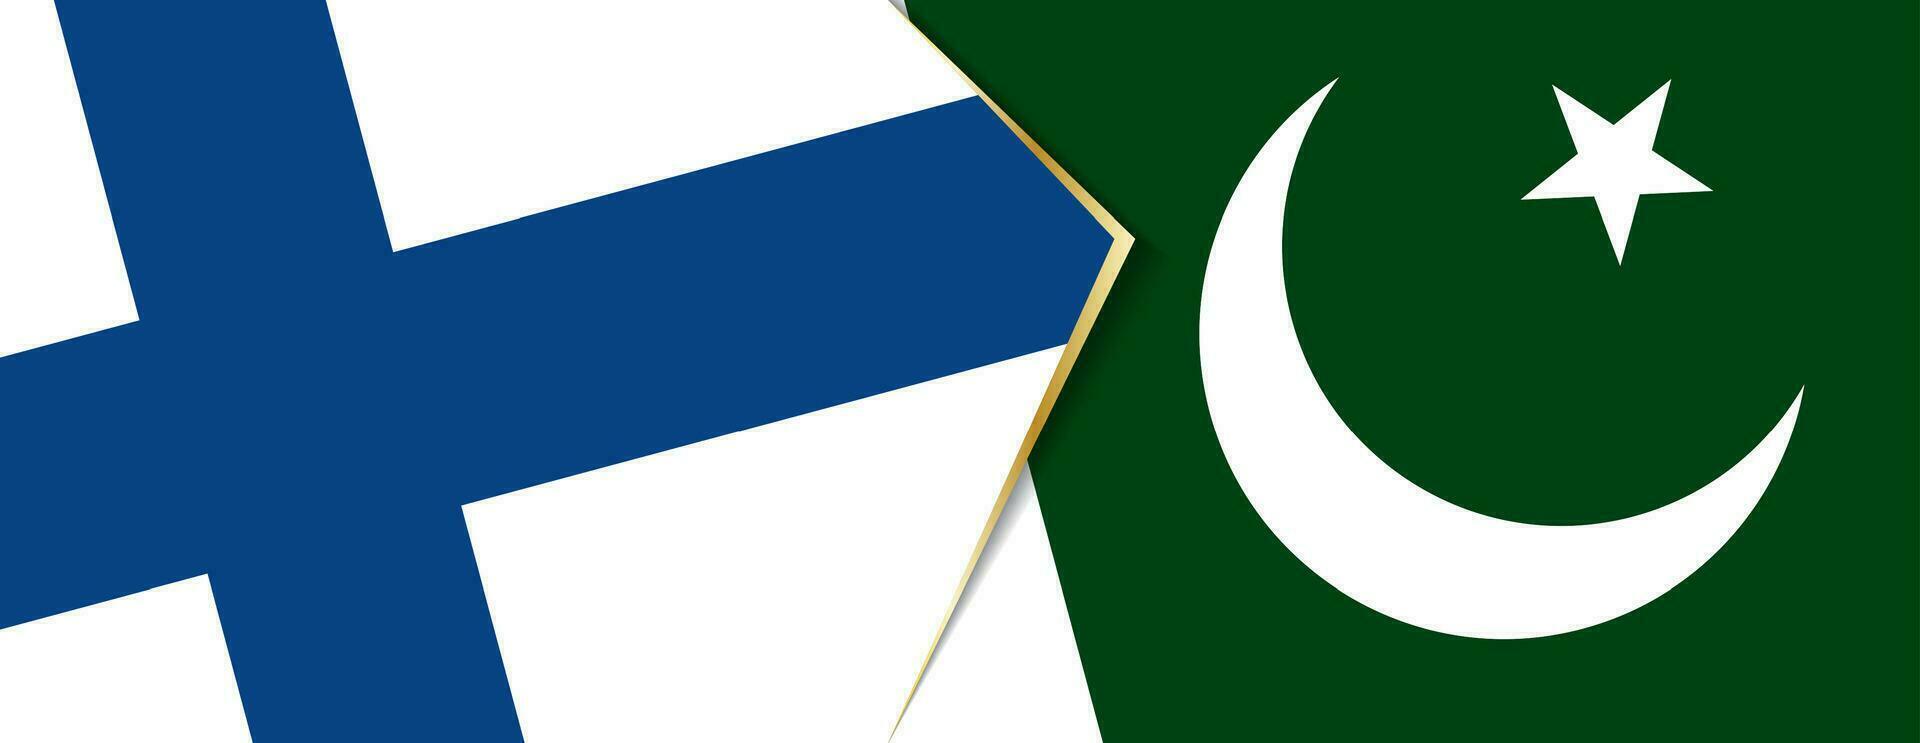 finland och pakistan flaggor, två vektor flaggor.